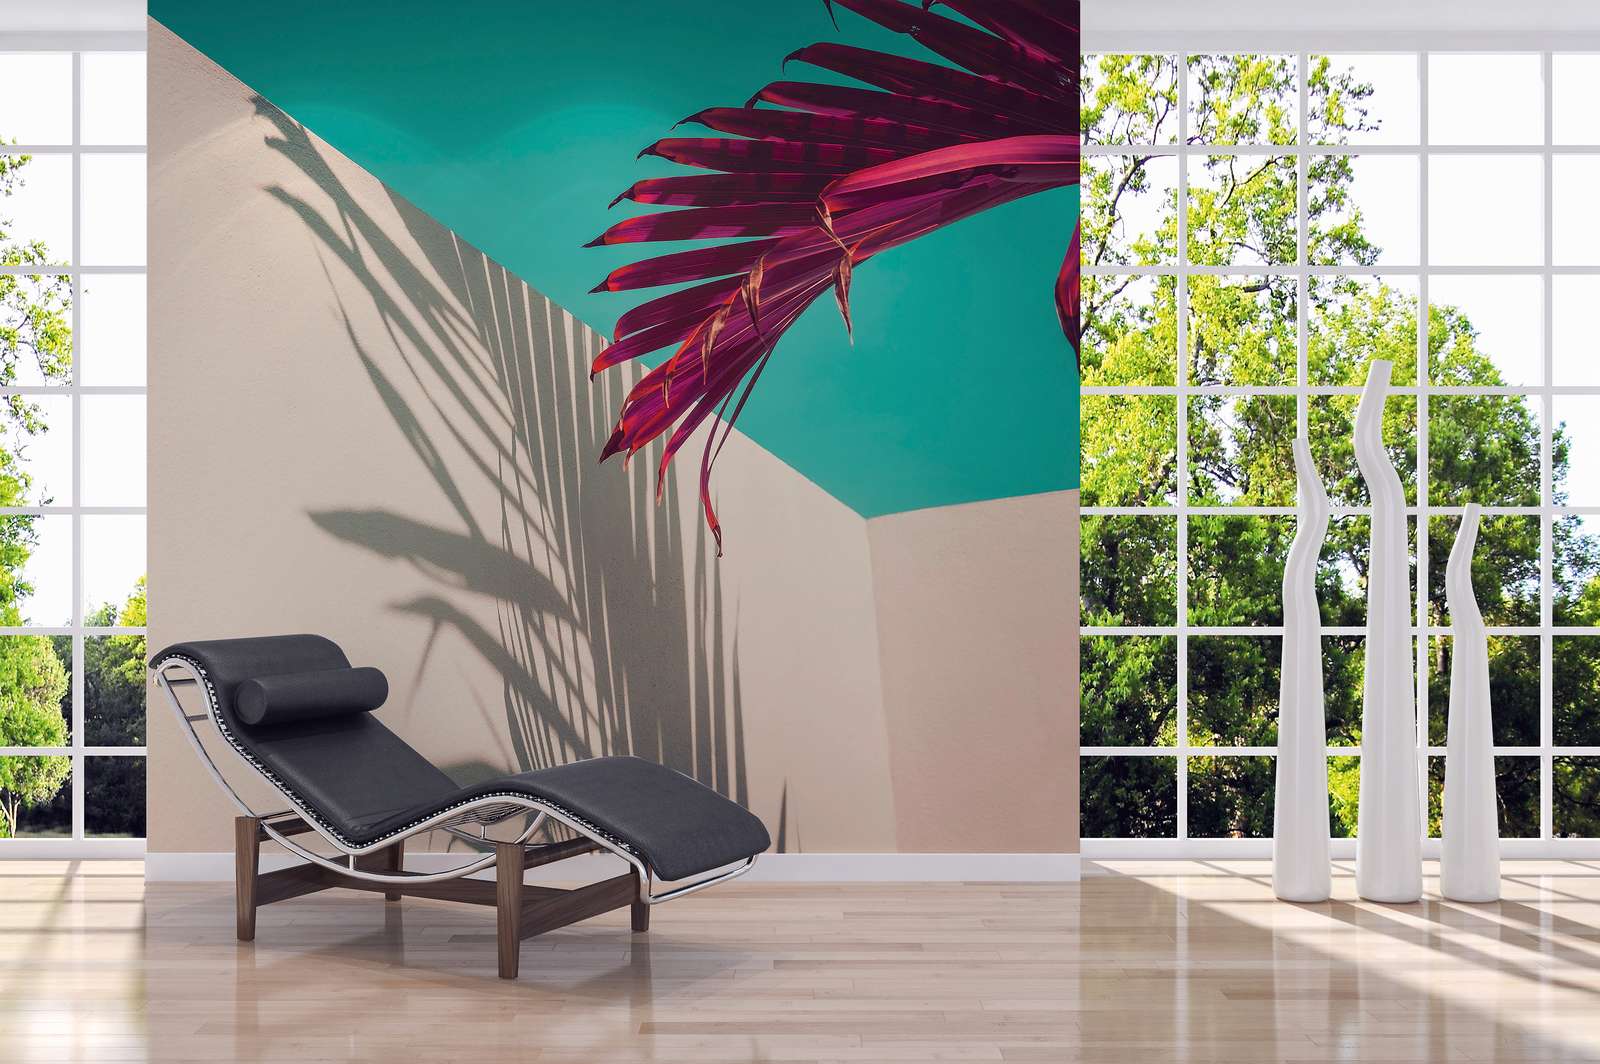             Fototapete mit Palmblatt und Schatten an Betonwand – Lila, Türkis, Weiß
        